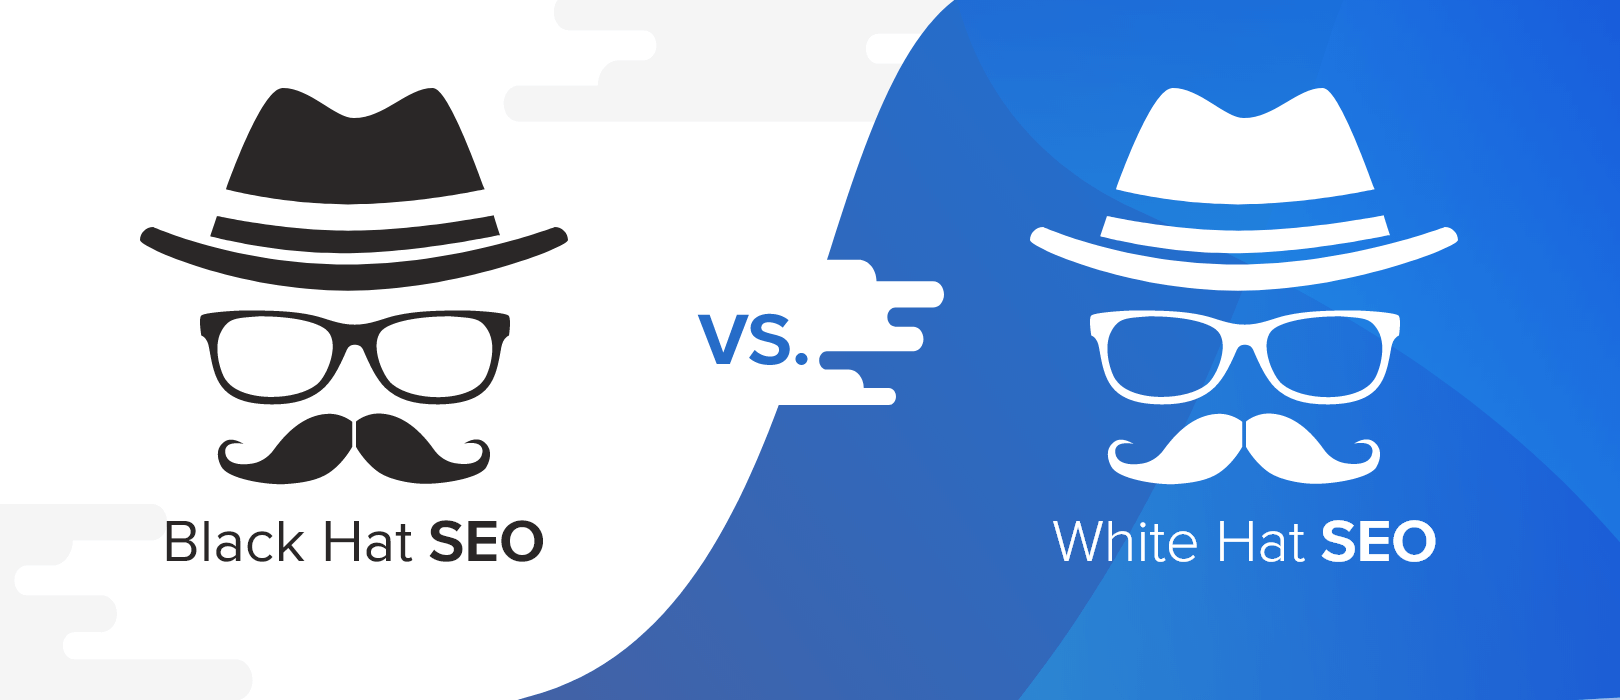 Dass sie hat. Black hat SEO. White hat SEO. White hat vs Black hat SEO. Черные методы сео.